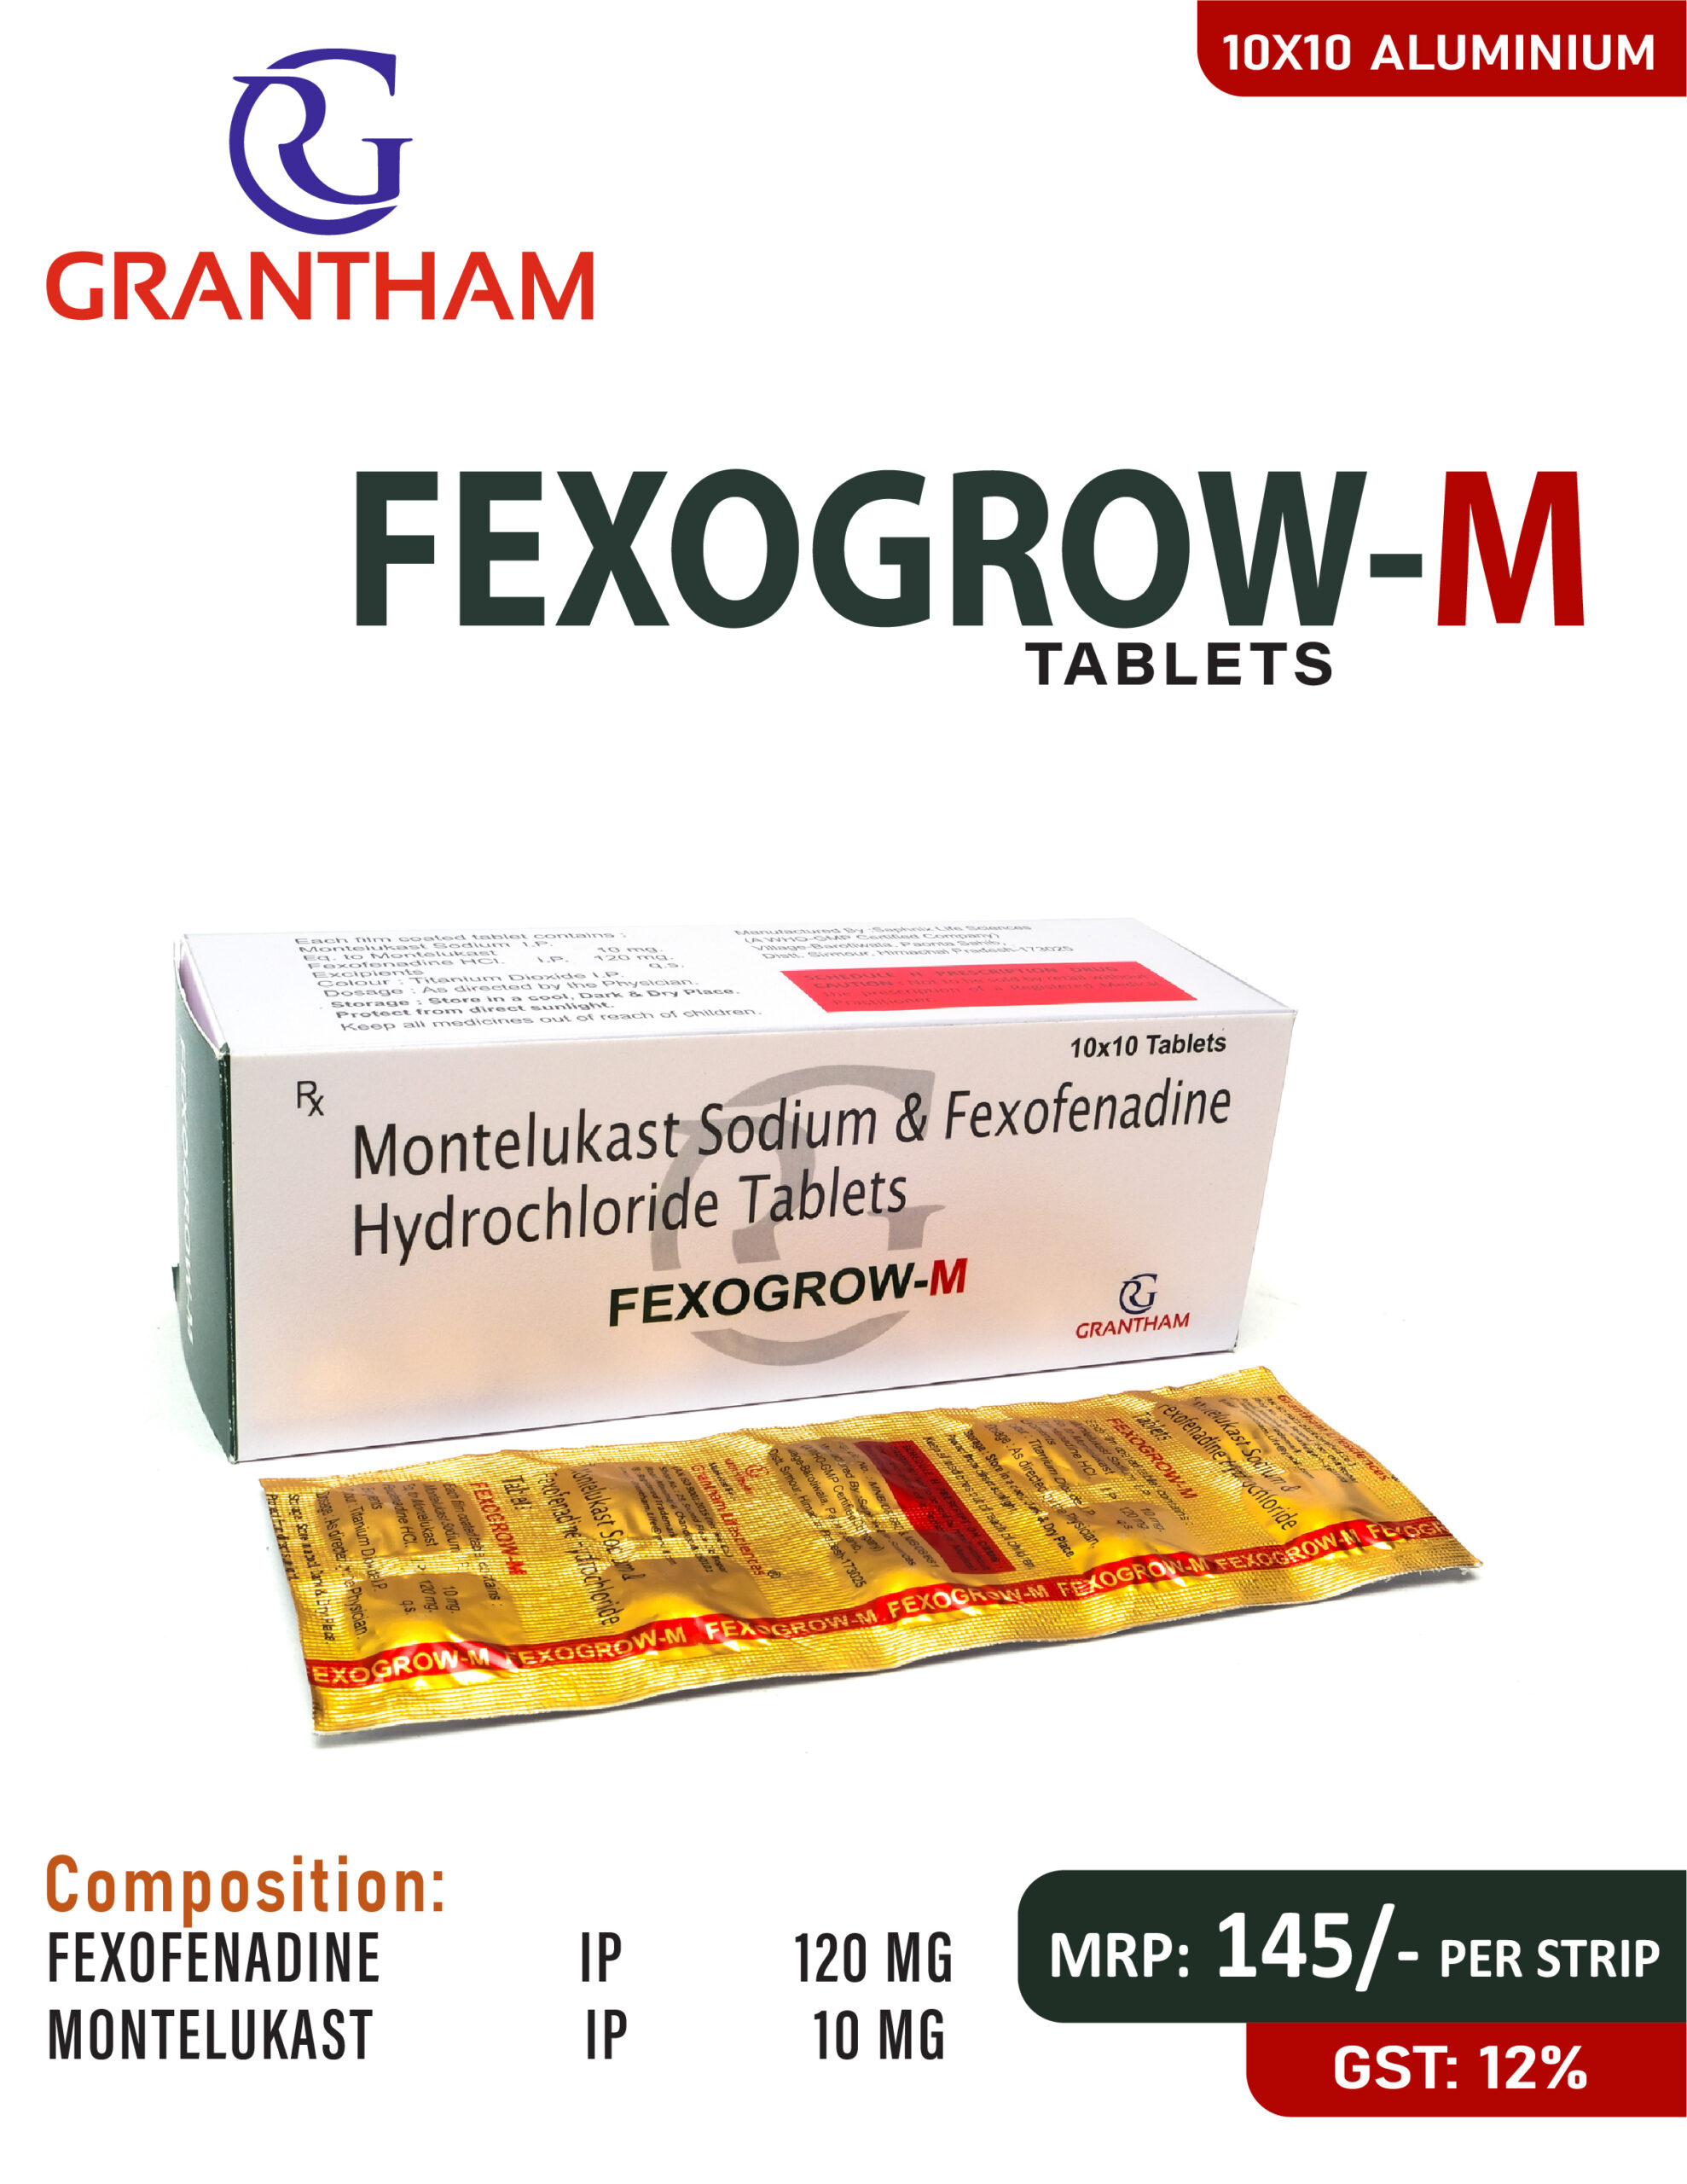 FEXOGROW M